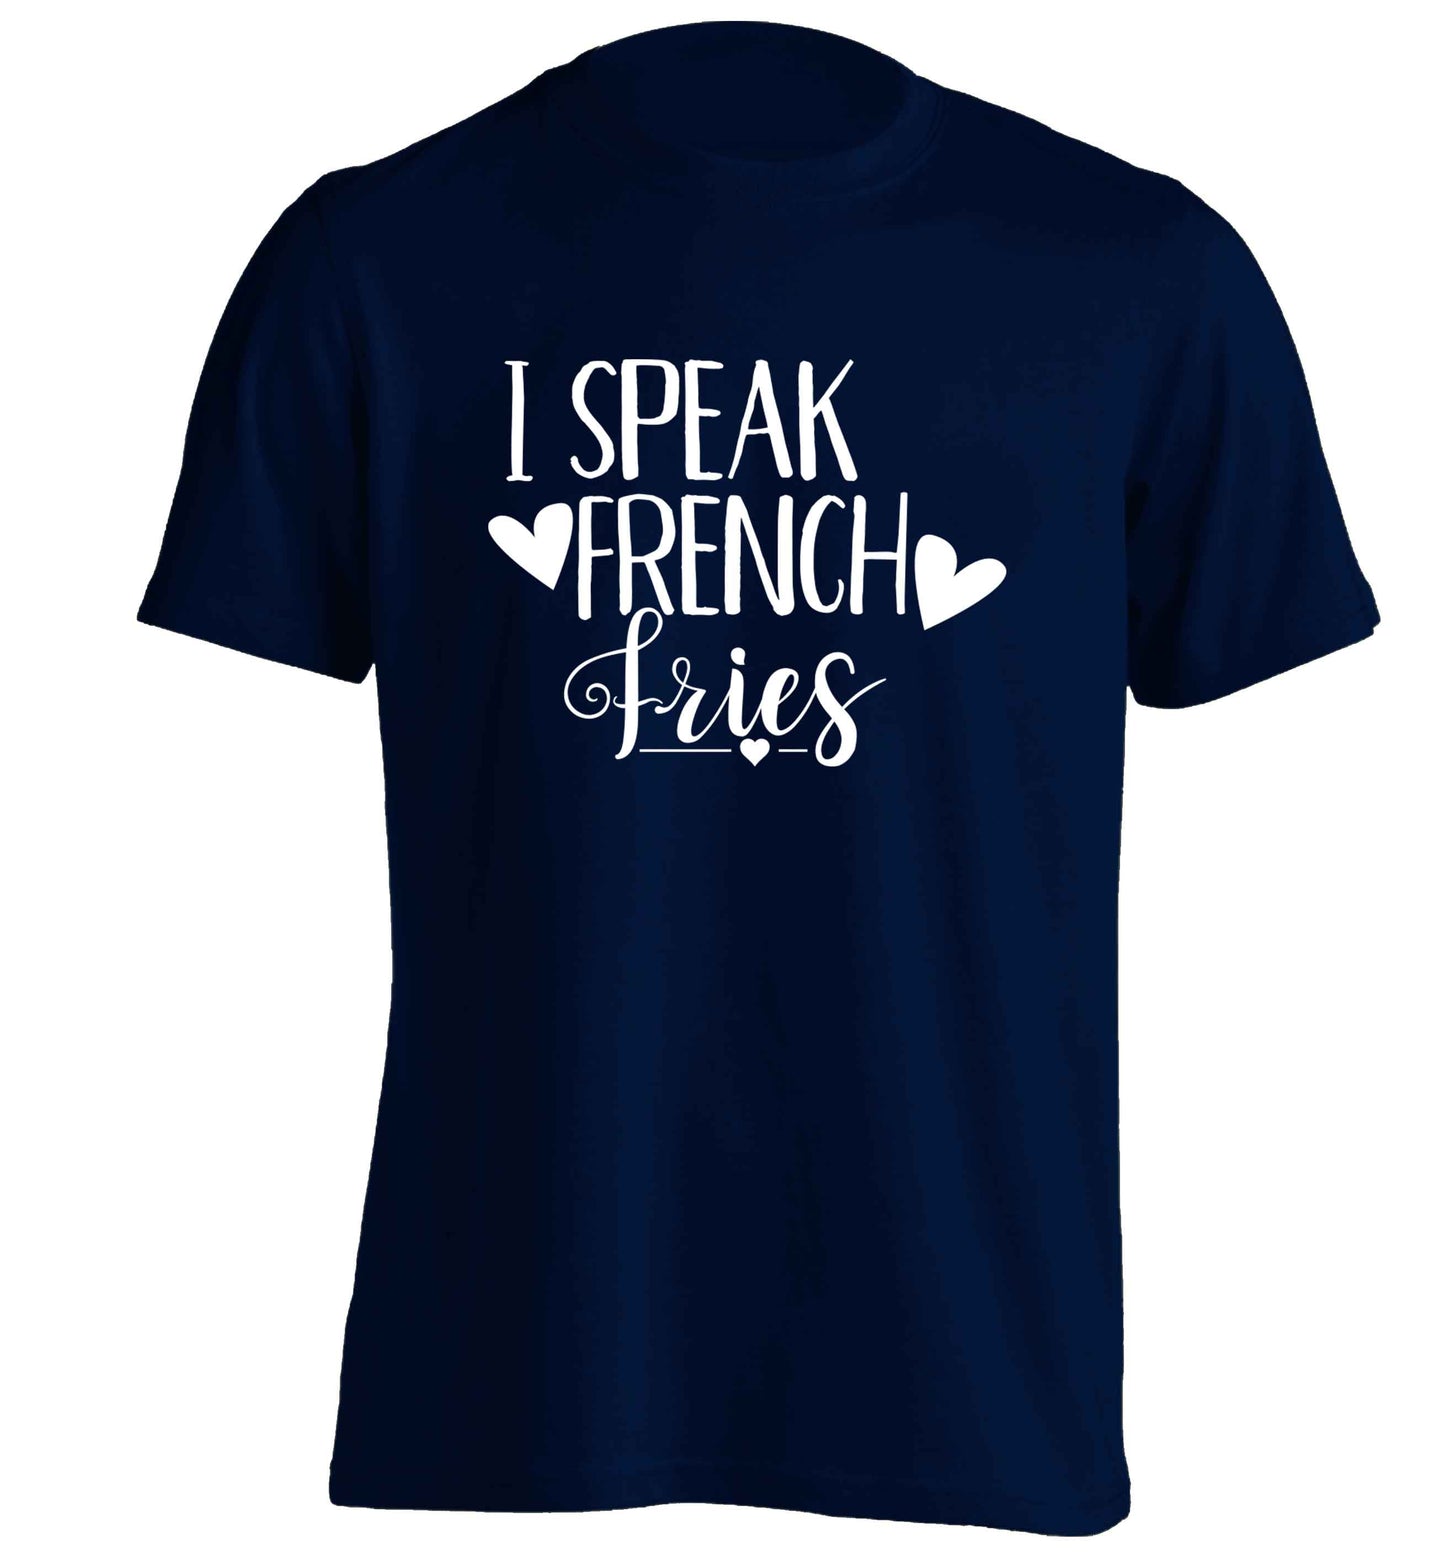 I speak French fries adults unisex navy Tshirt 2XL